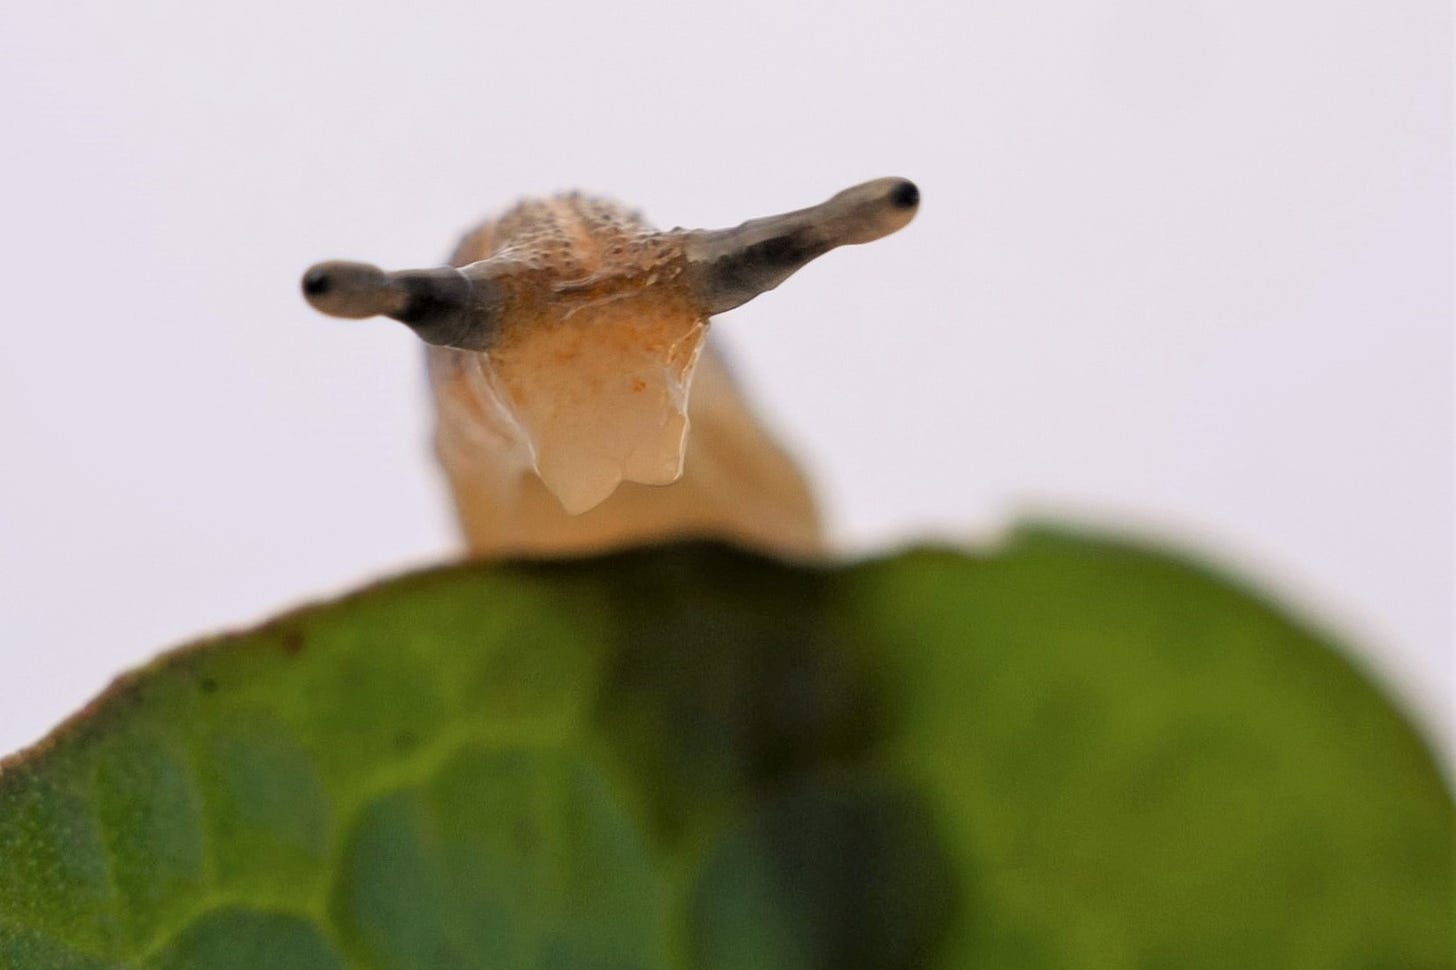 Leaf-veined slug (Athoracophoridae, native) close up on face